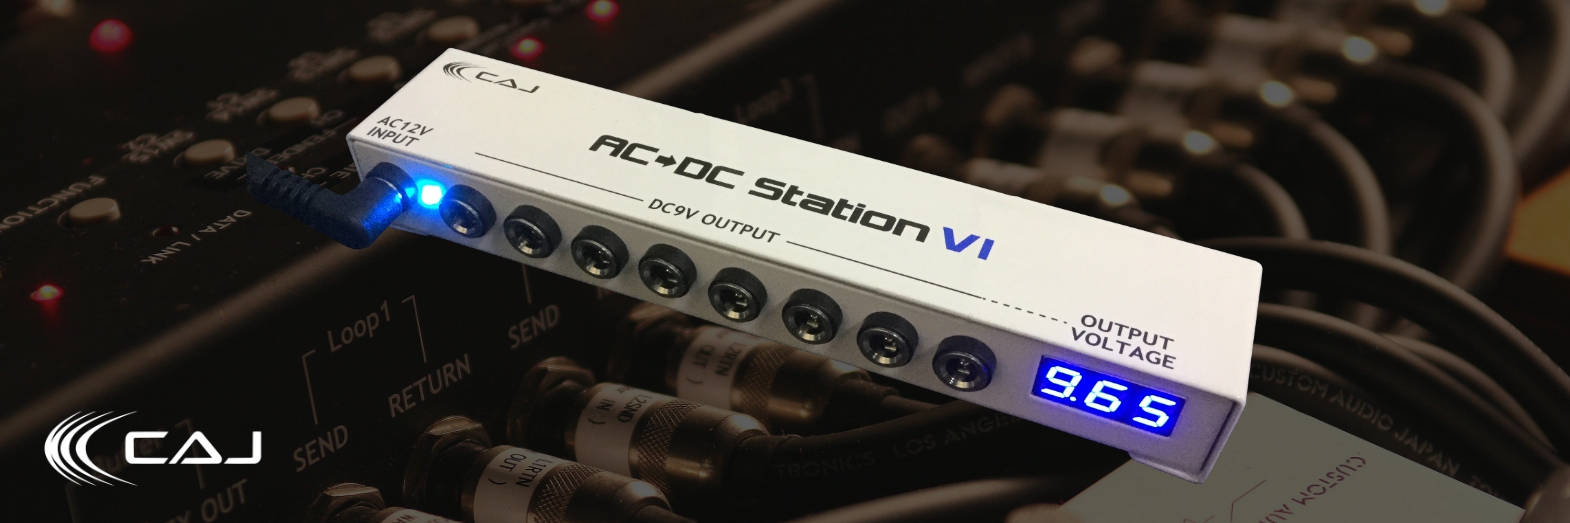 パワーサプライCUSTOM AUDIO JAPAN AC/DC Station VI - エフェクター